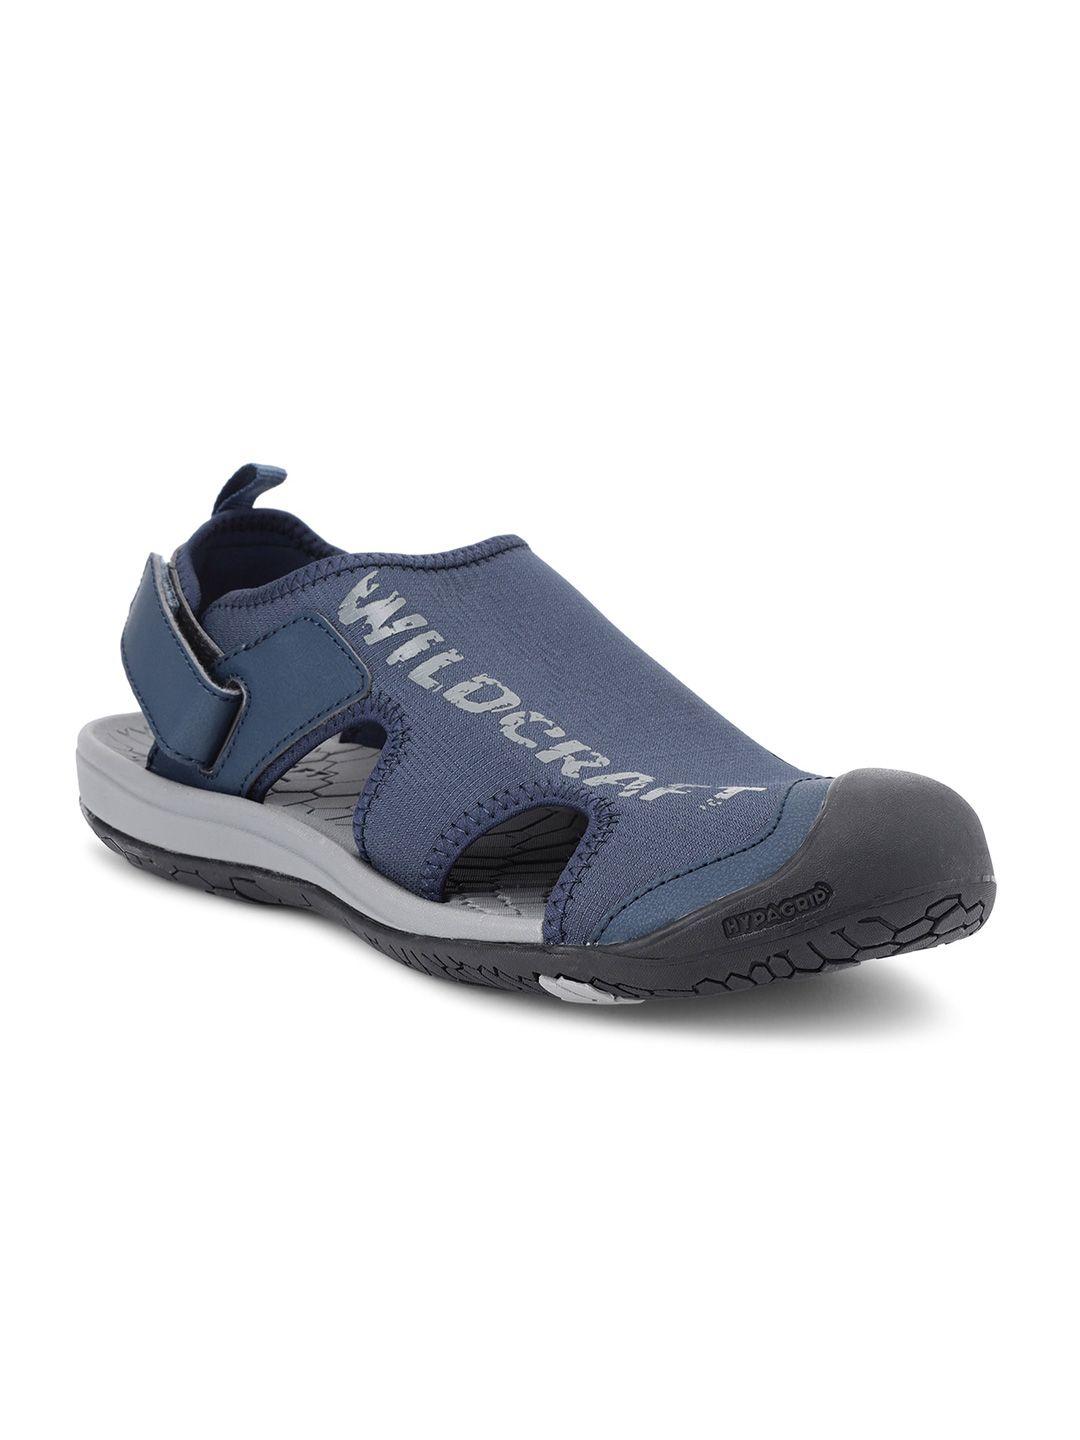 wildcraft-men-navy-blue-&-grey-pu-comfort-sandals